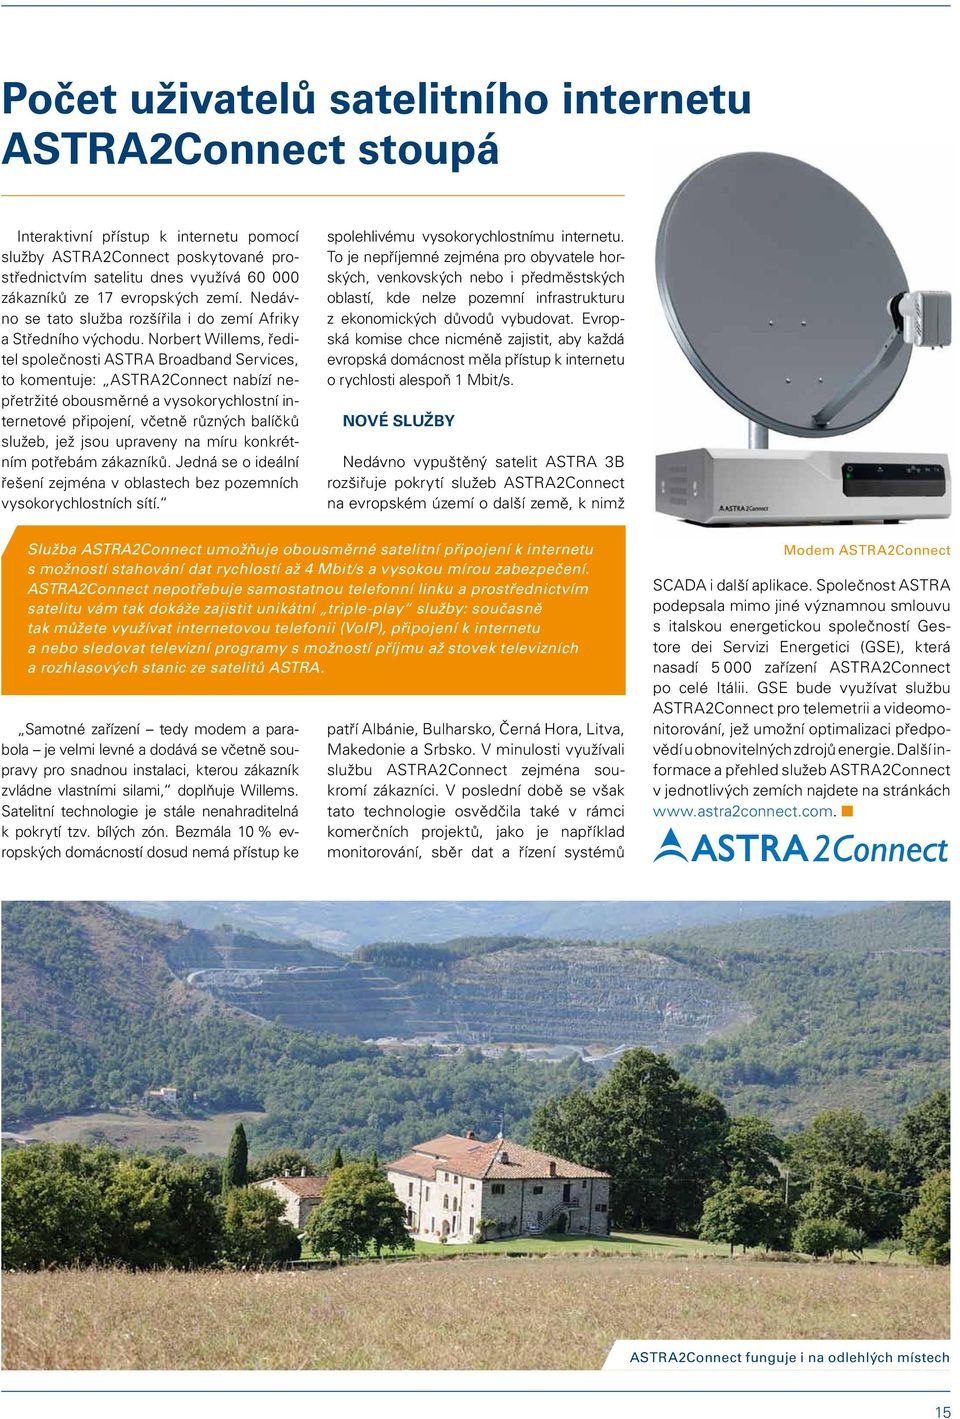 Norbert Willems, ředitel společnosti ASTRA Broadband Services, to komentuje: ASTRA2Connect nabízí nepřetržité obousměrné a vysokorychlostní internetové připojení, včetně různých balíčků služeb, jež